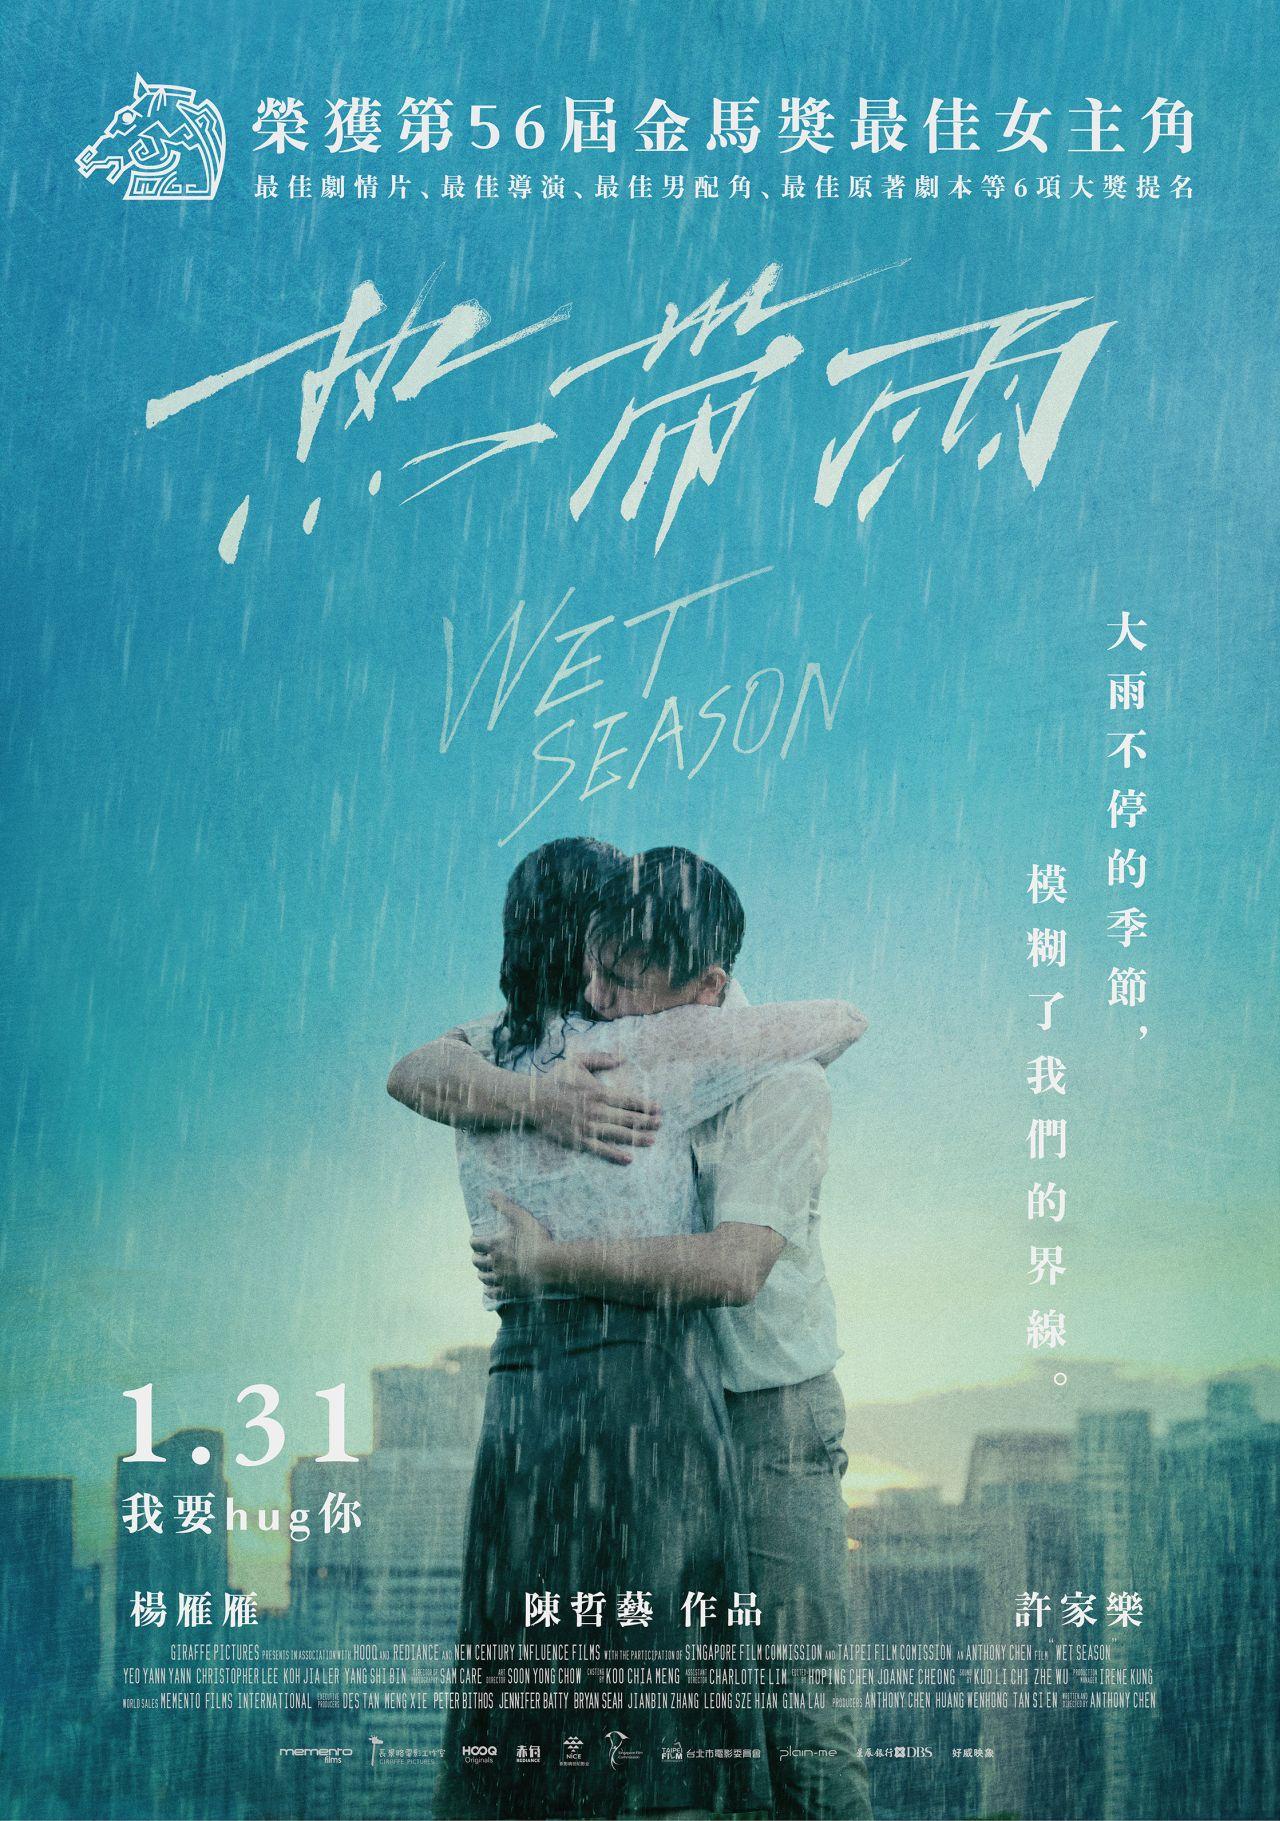 熱帶雨(Wet season)